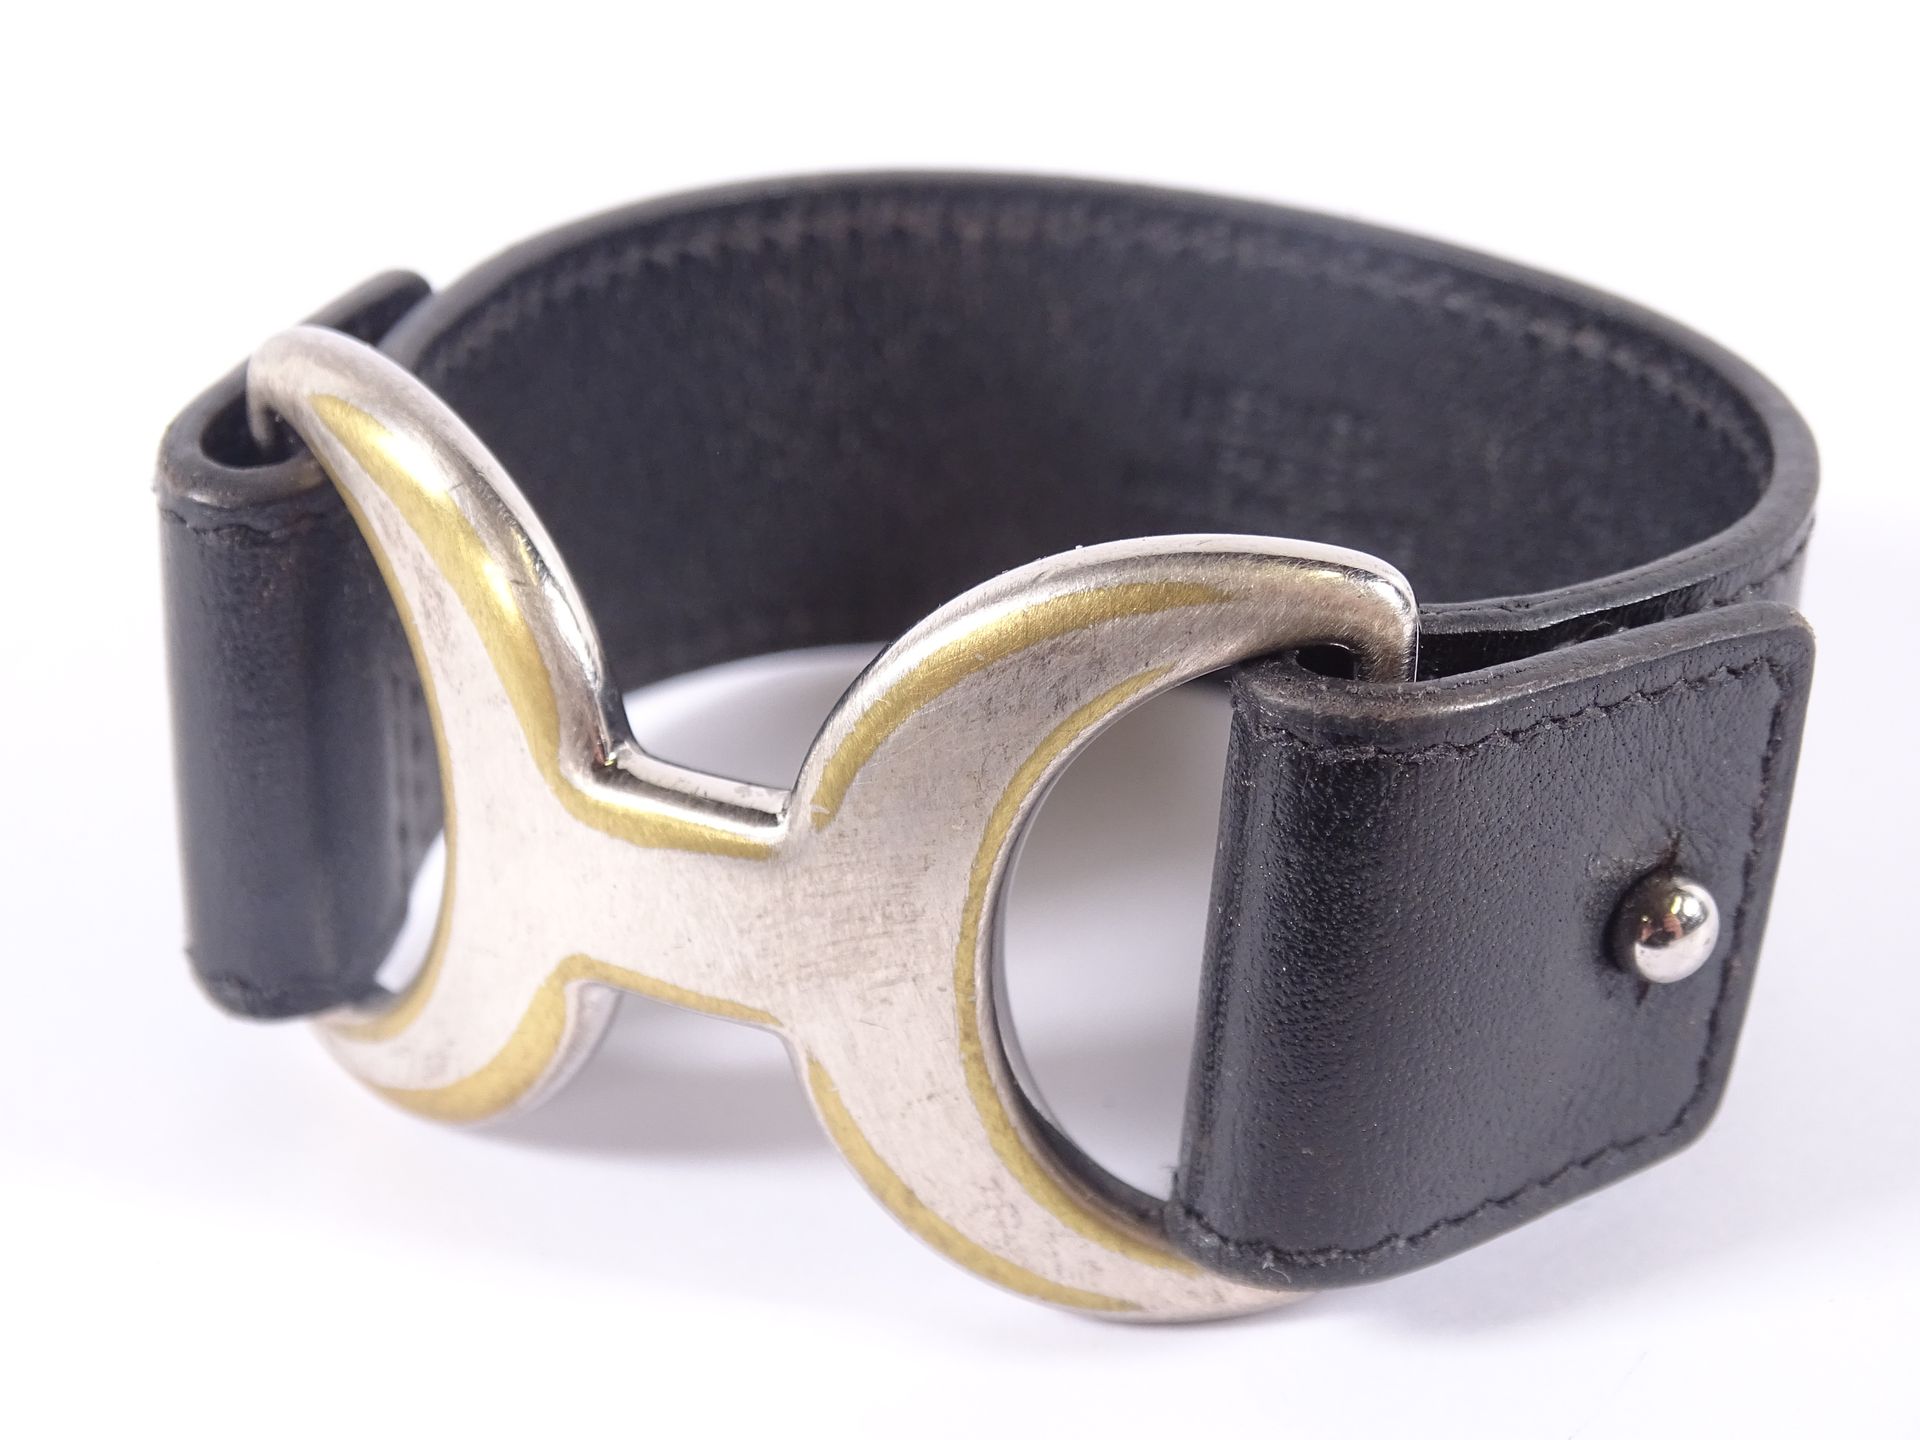 HERMES Bracelet en cuir noir et métal brossé.

Modèle Pavane.

Diamètre : 6,5 cm&hellip;